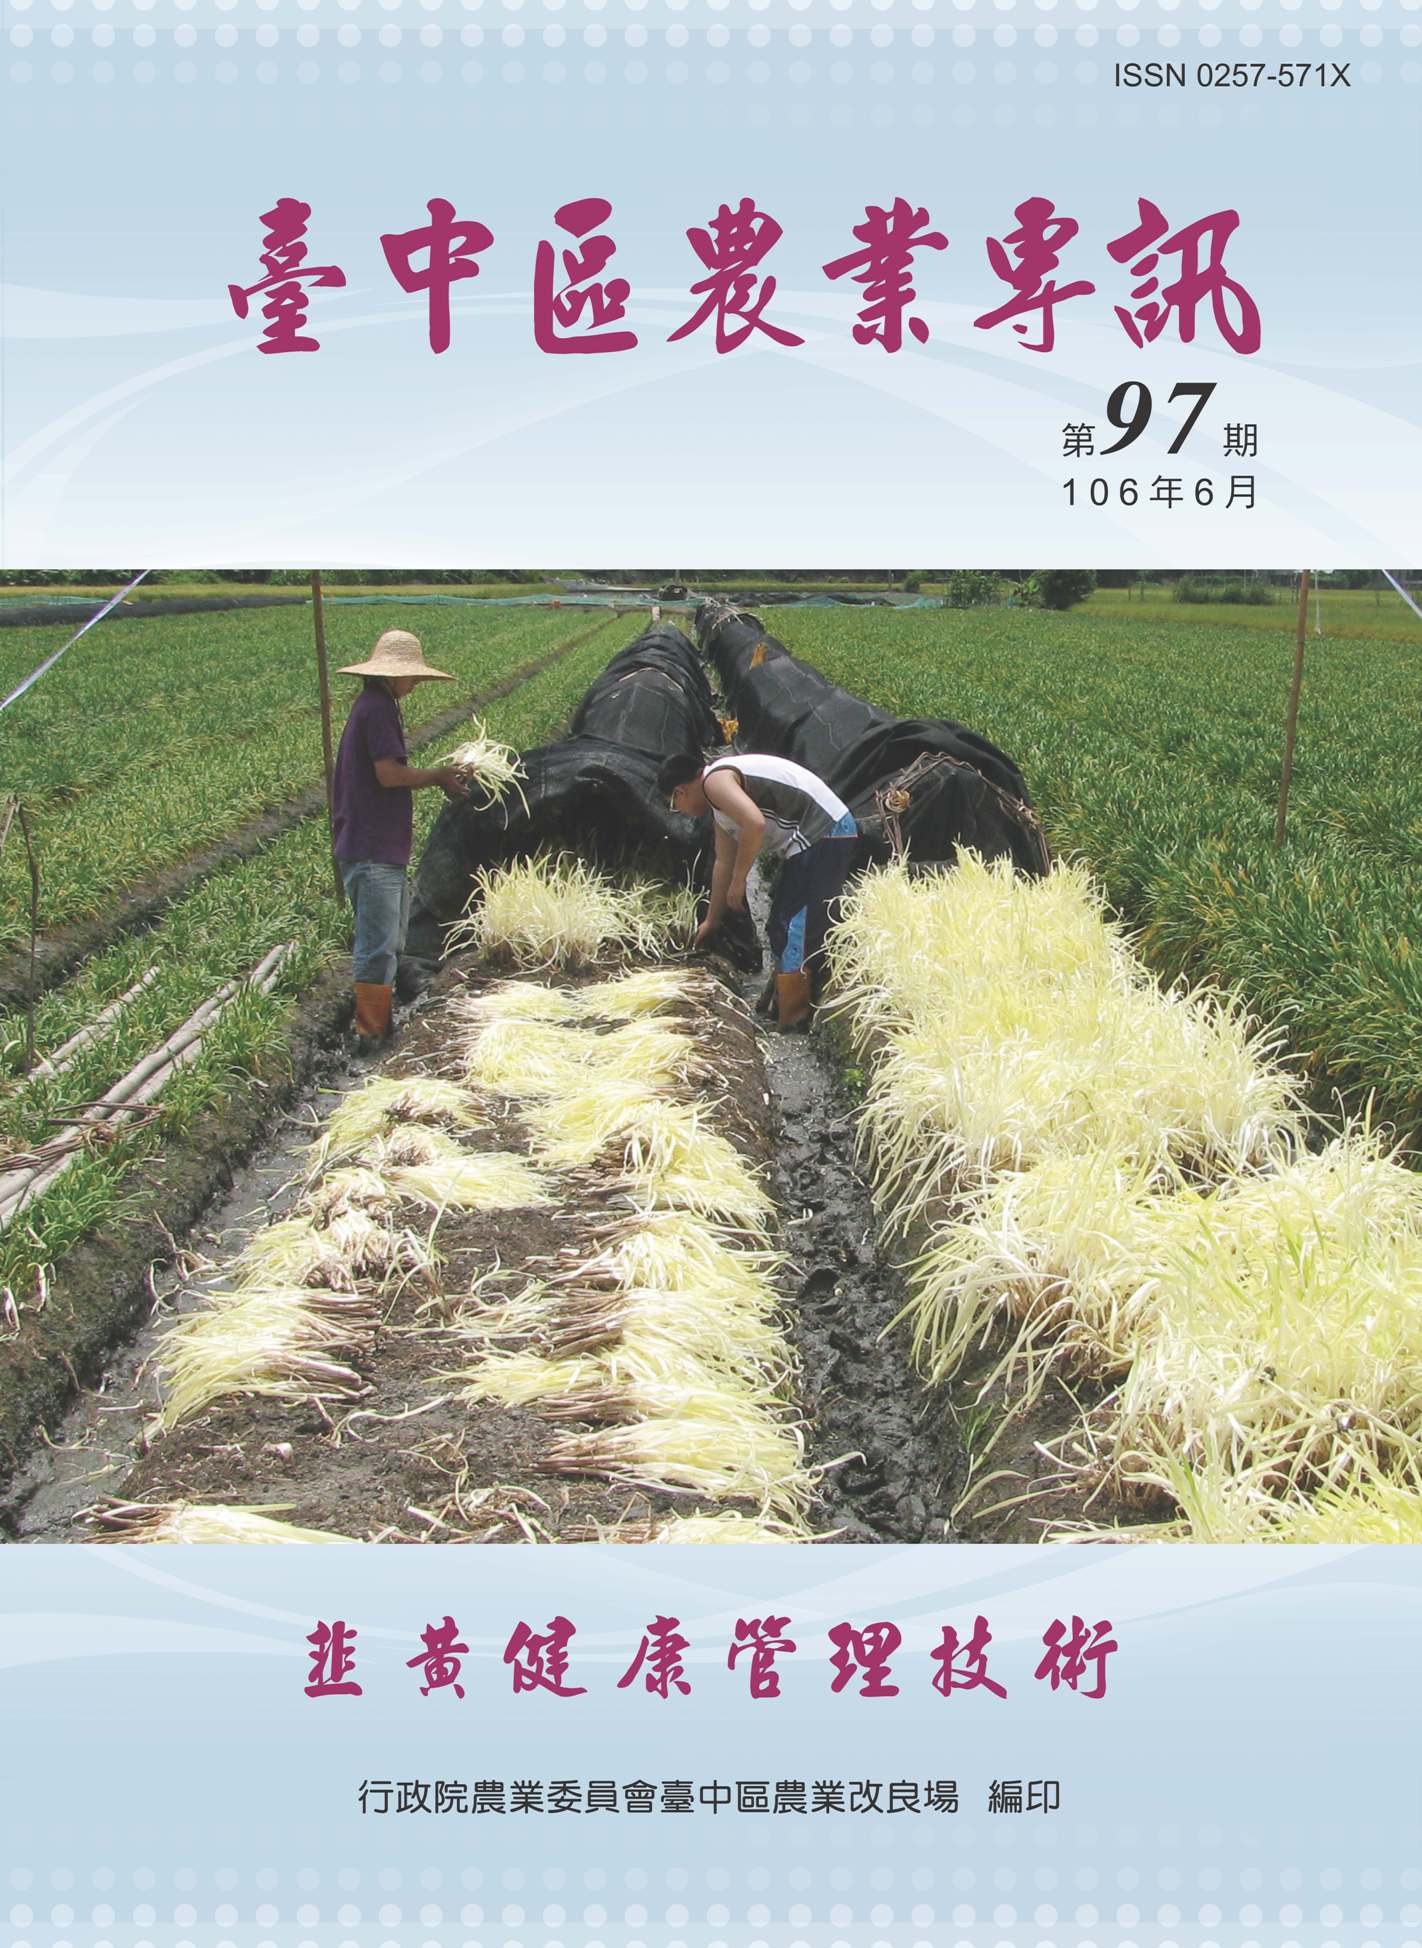 台中區農業專訊第 97 期-韭黃健康管理技術